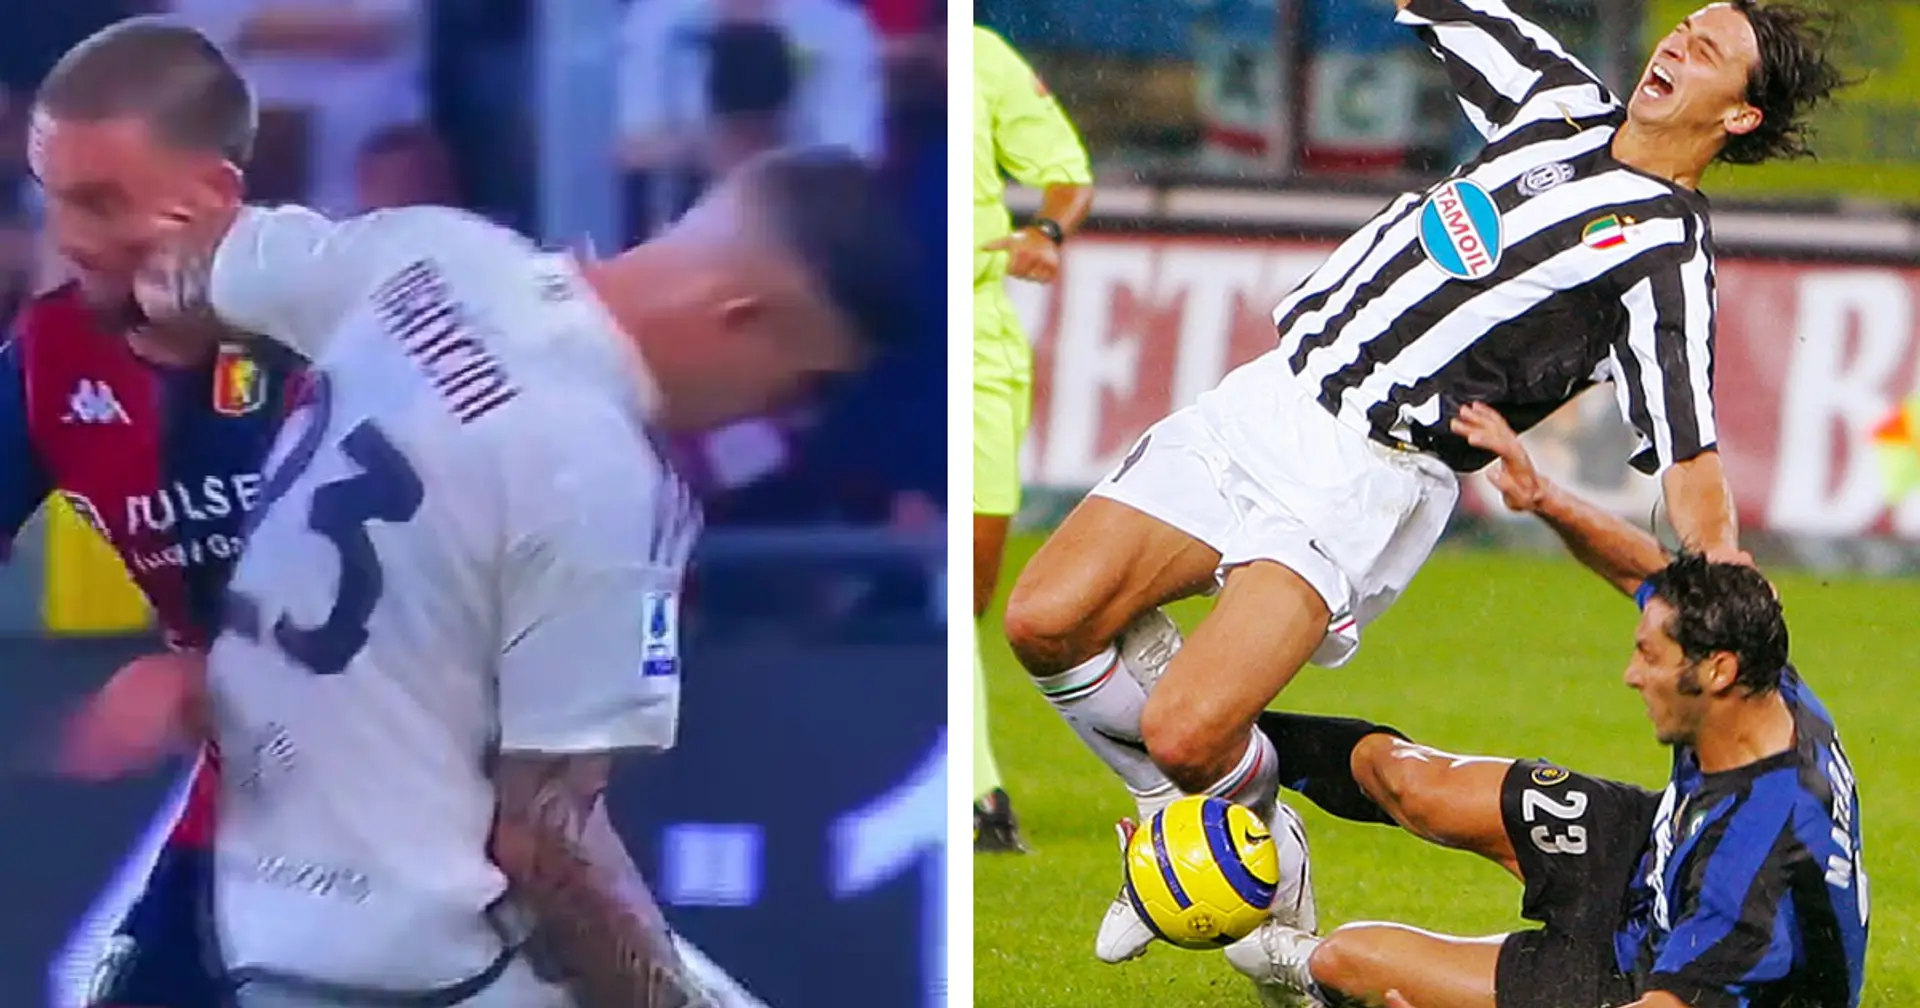 "Vi meravigliate? Ha come idolo Materazzi": il gesto antisportivo di Mancini contro il Genoa scatena i tifosi della Juventus